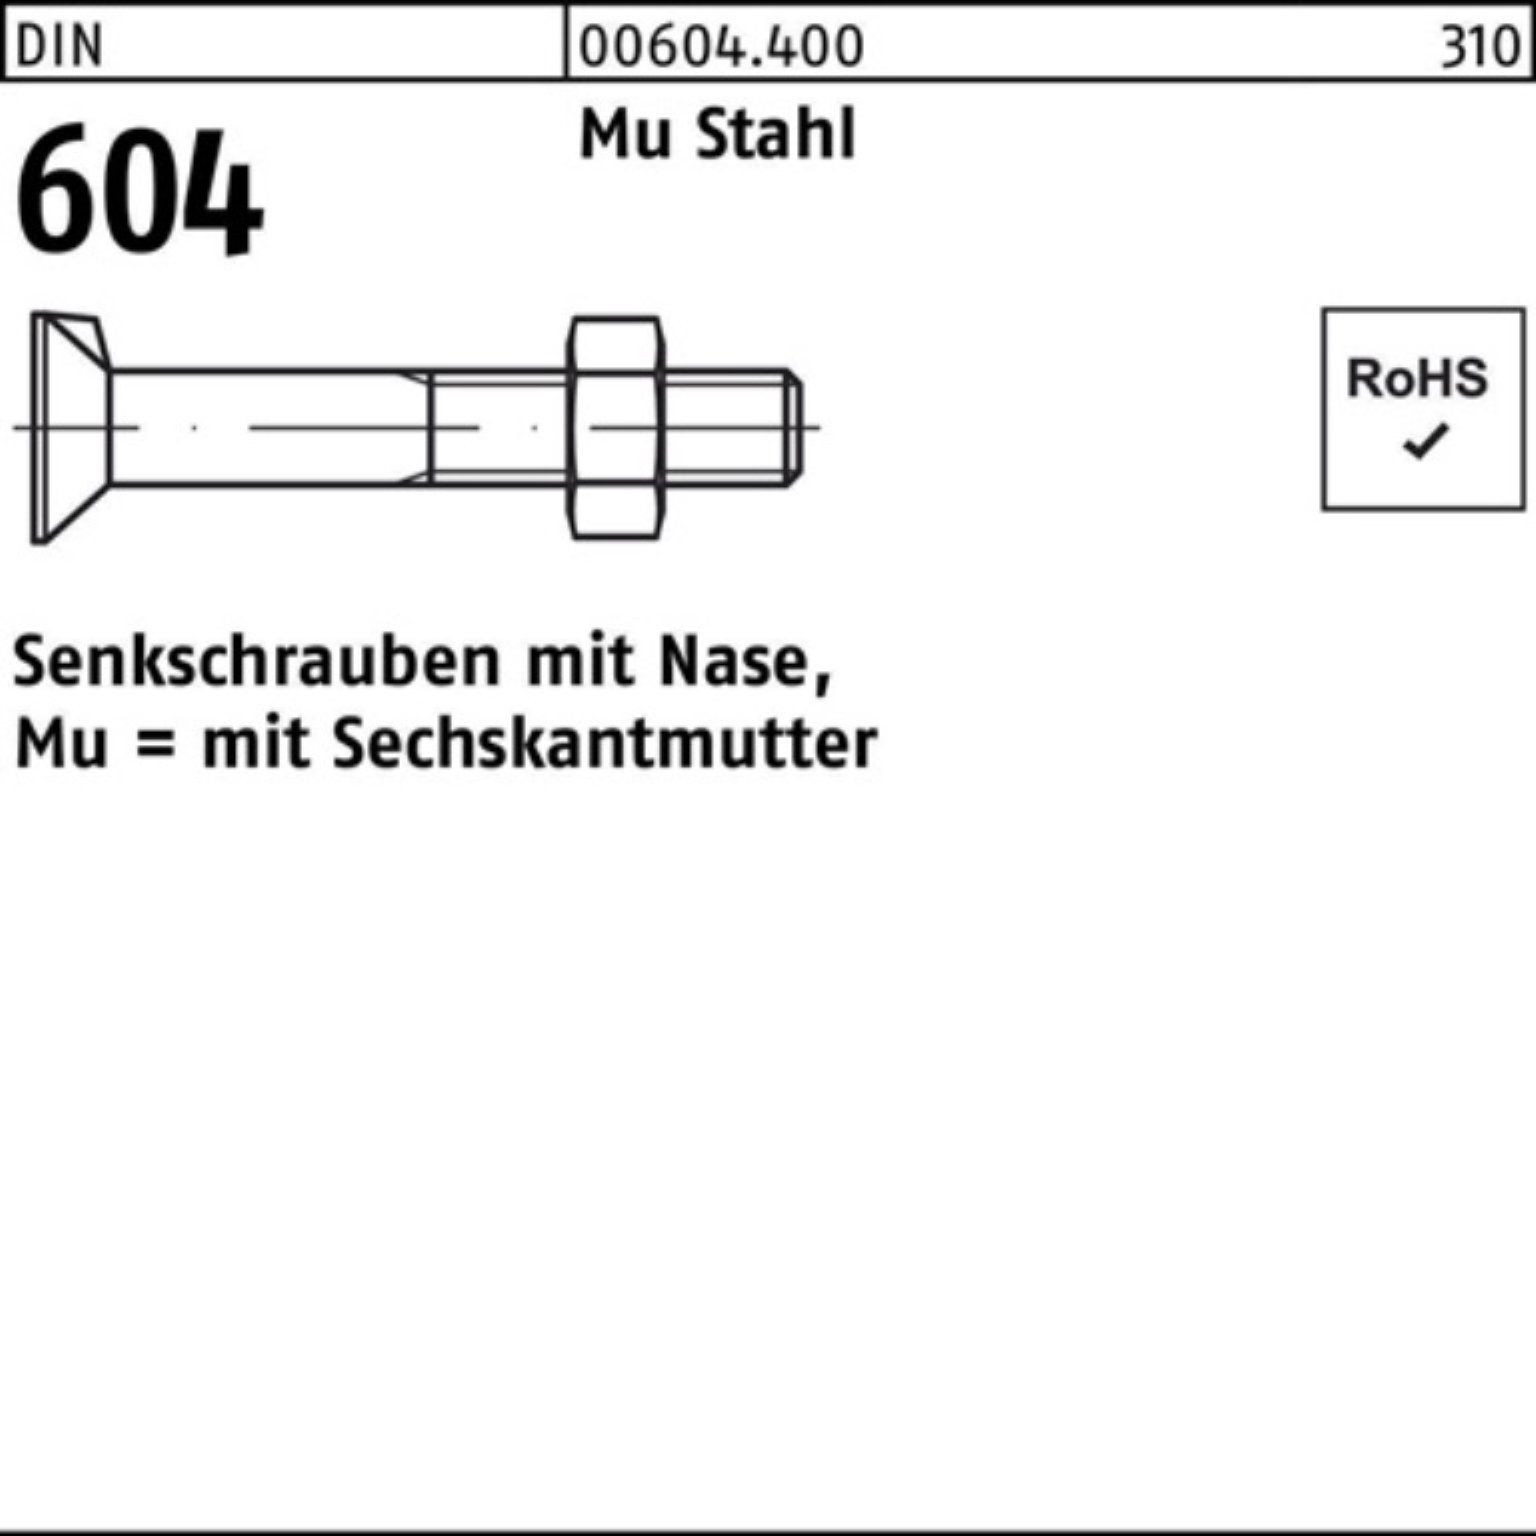 Reyher Senkschraube 100er Pack Senkschraube DIN 604 Nase/6-ktmutter M12x 70 Mu Stahl 4.6 5 | Schrauben